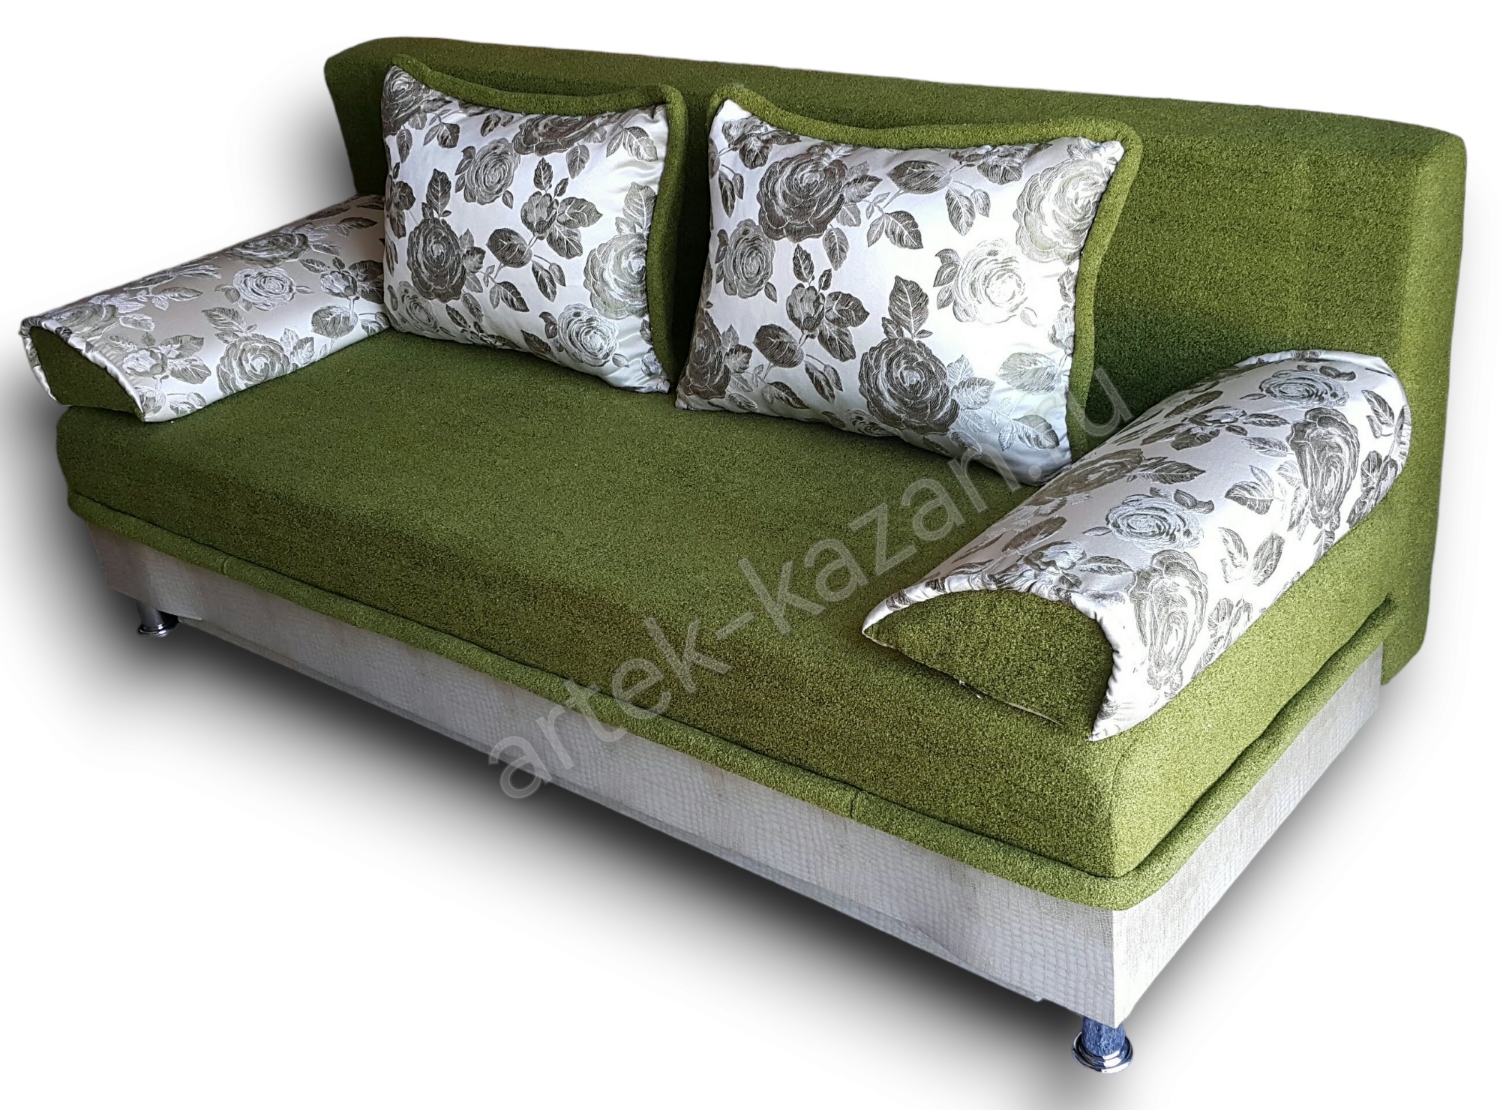 диван еврокнижка Эконом фото № 14. Купить недорогой диван по низкой цене от производителя можно у нас.